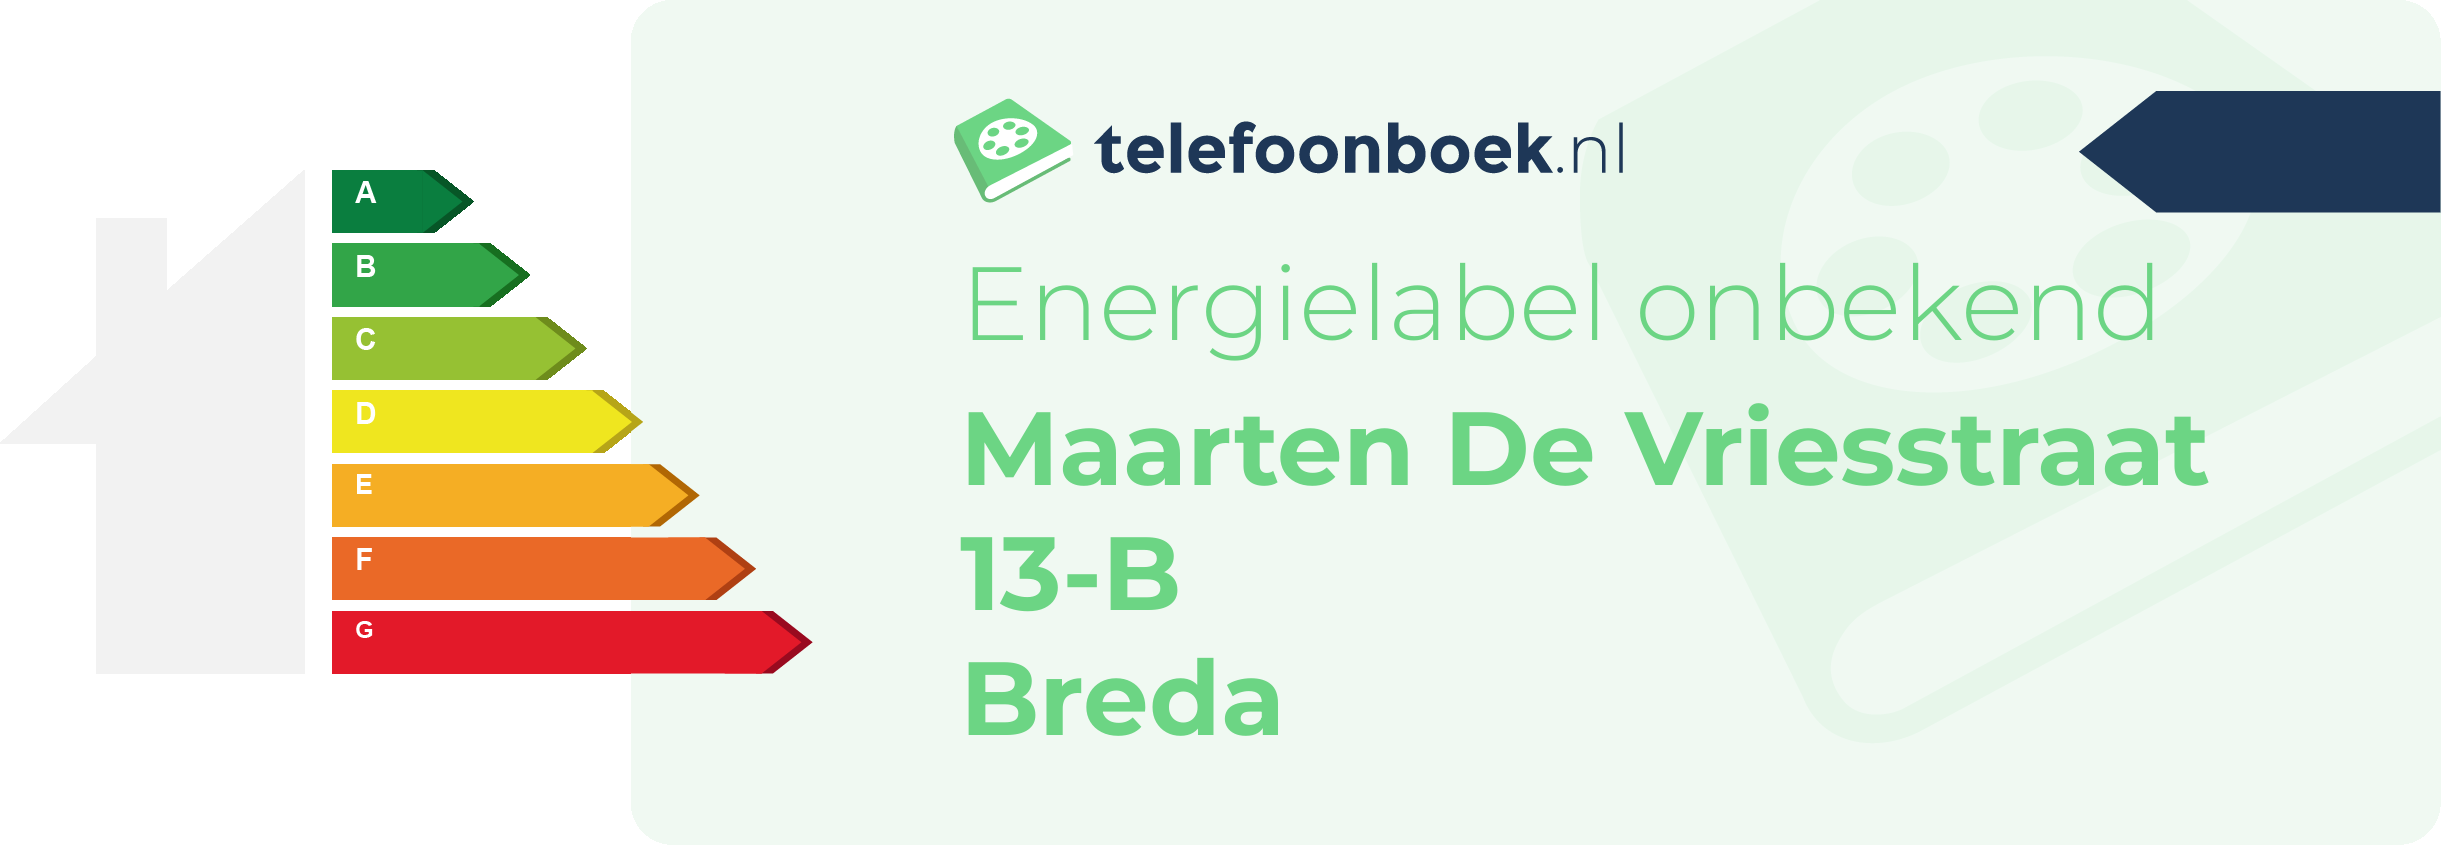 Energielabel Maarten De Vriesstraat 13-B Breda